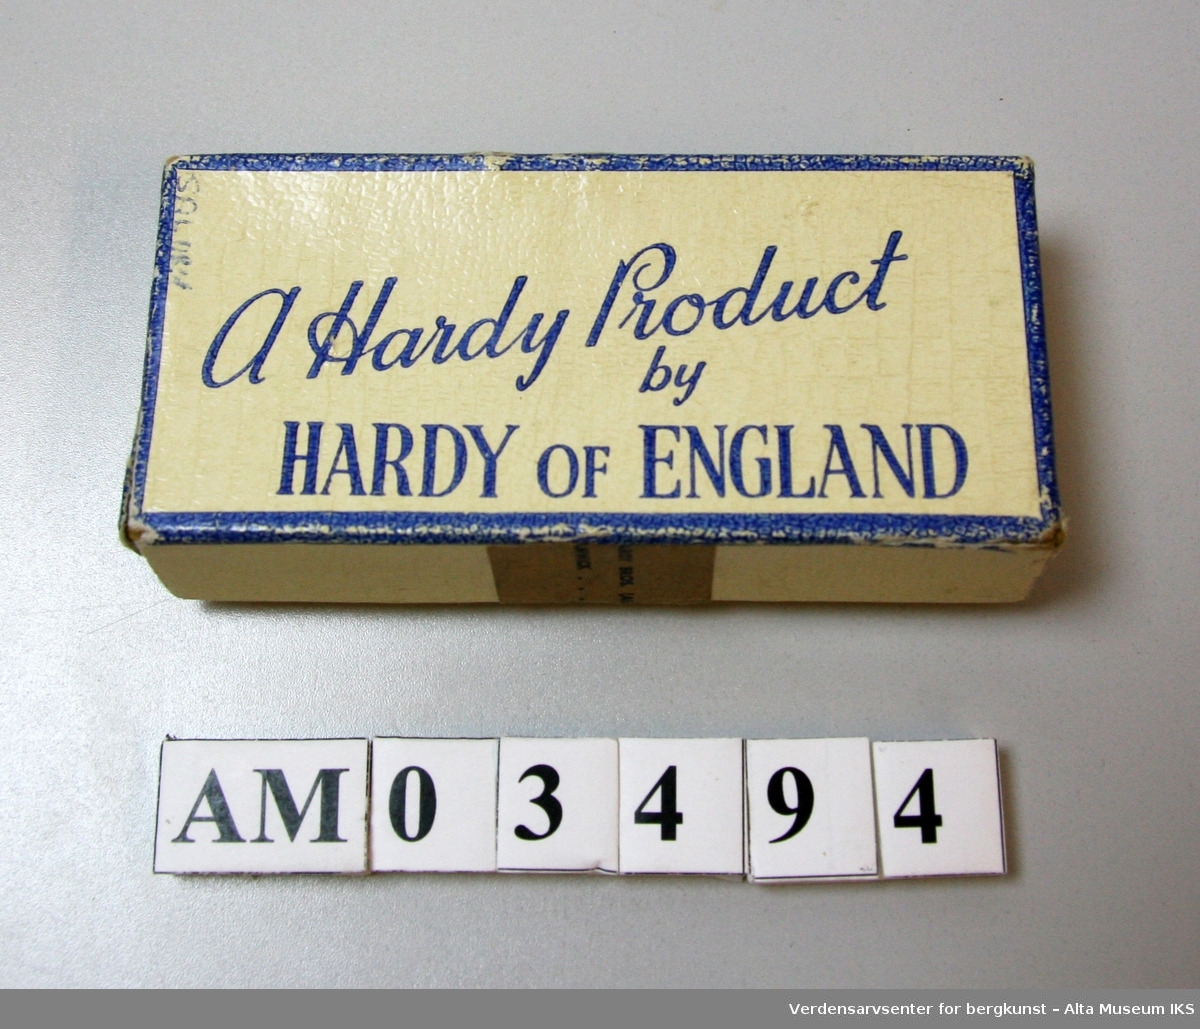 Pappeske med påtrykt "A Hardy Product by Hardy of England" på lokket. 

Inneholder en trippelkrok og en håndskrevet lapp med teksten: 

"Mustad 7228 EBB Superior Nr 1

Mustad 
Per Risberg
(061)74300
Nr 4 og 5"